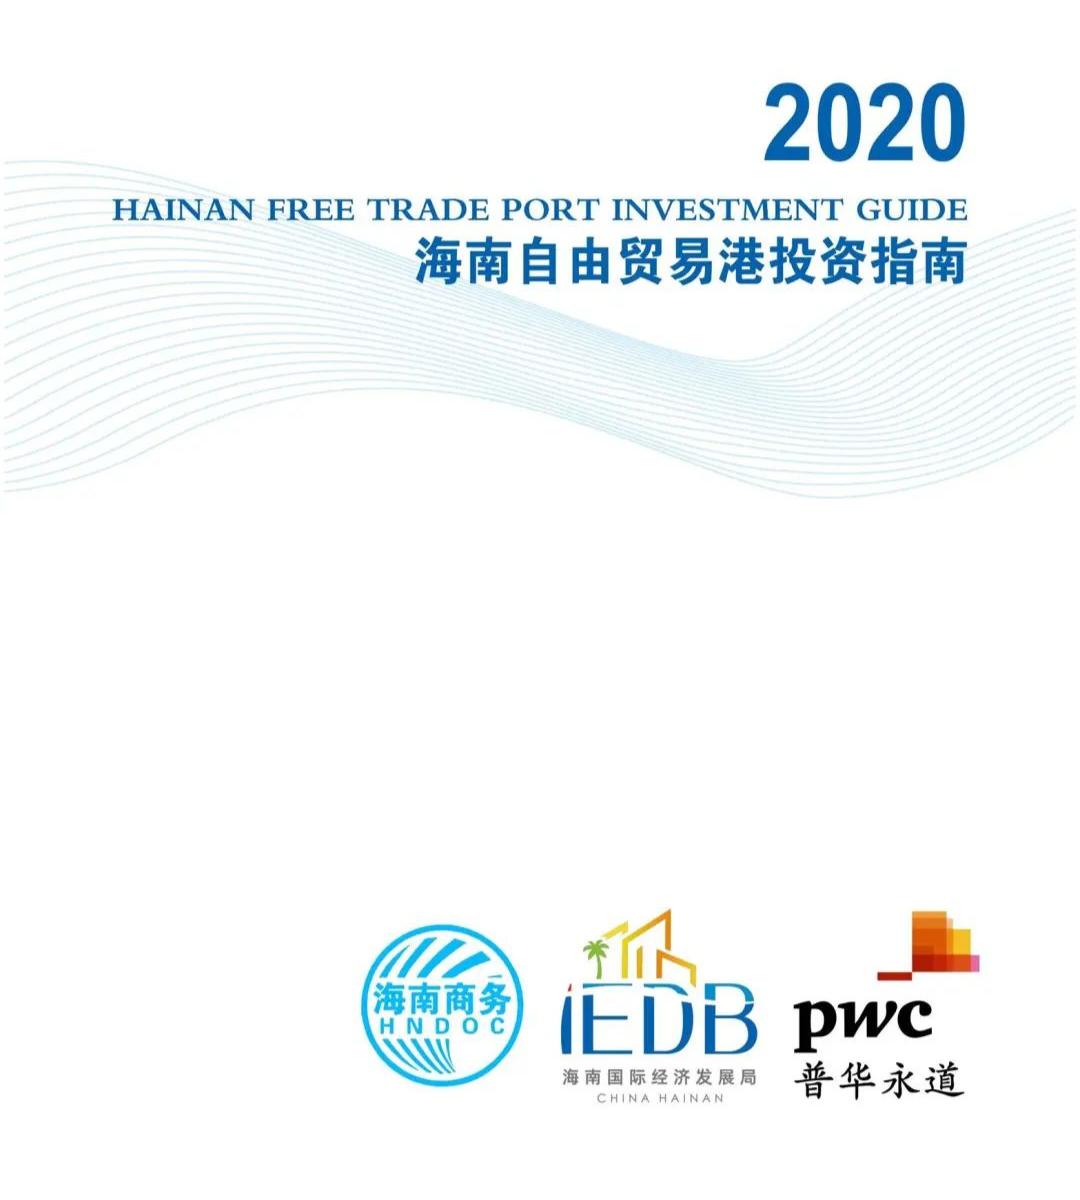 2020海南自由贸易港投资指南来了,千万别错过